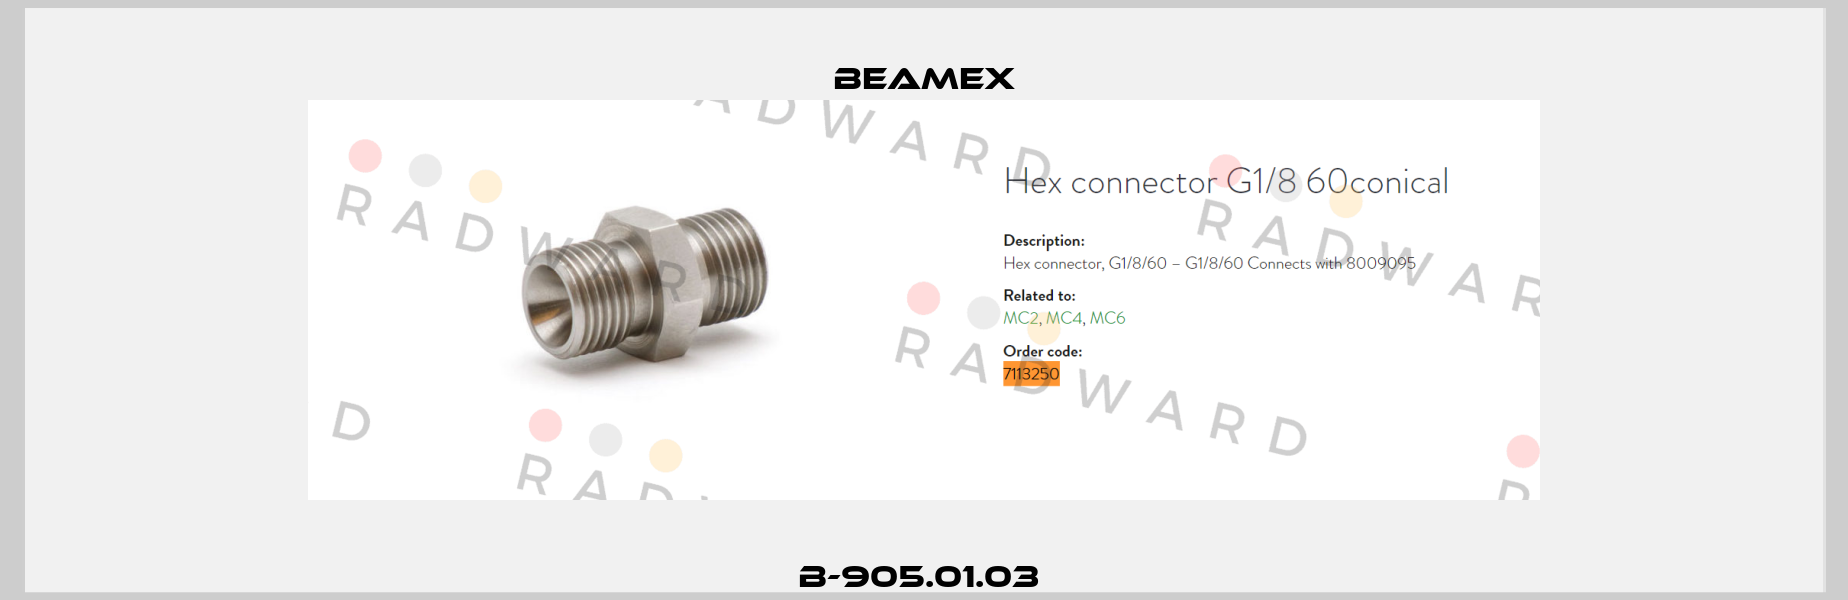 B-905.01.03  Beamex